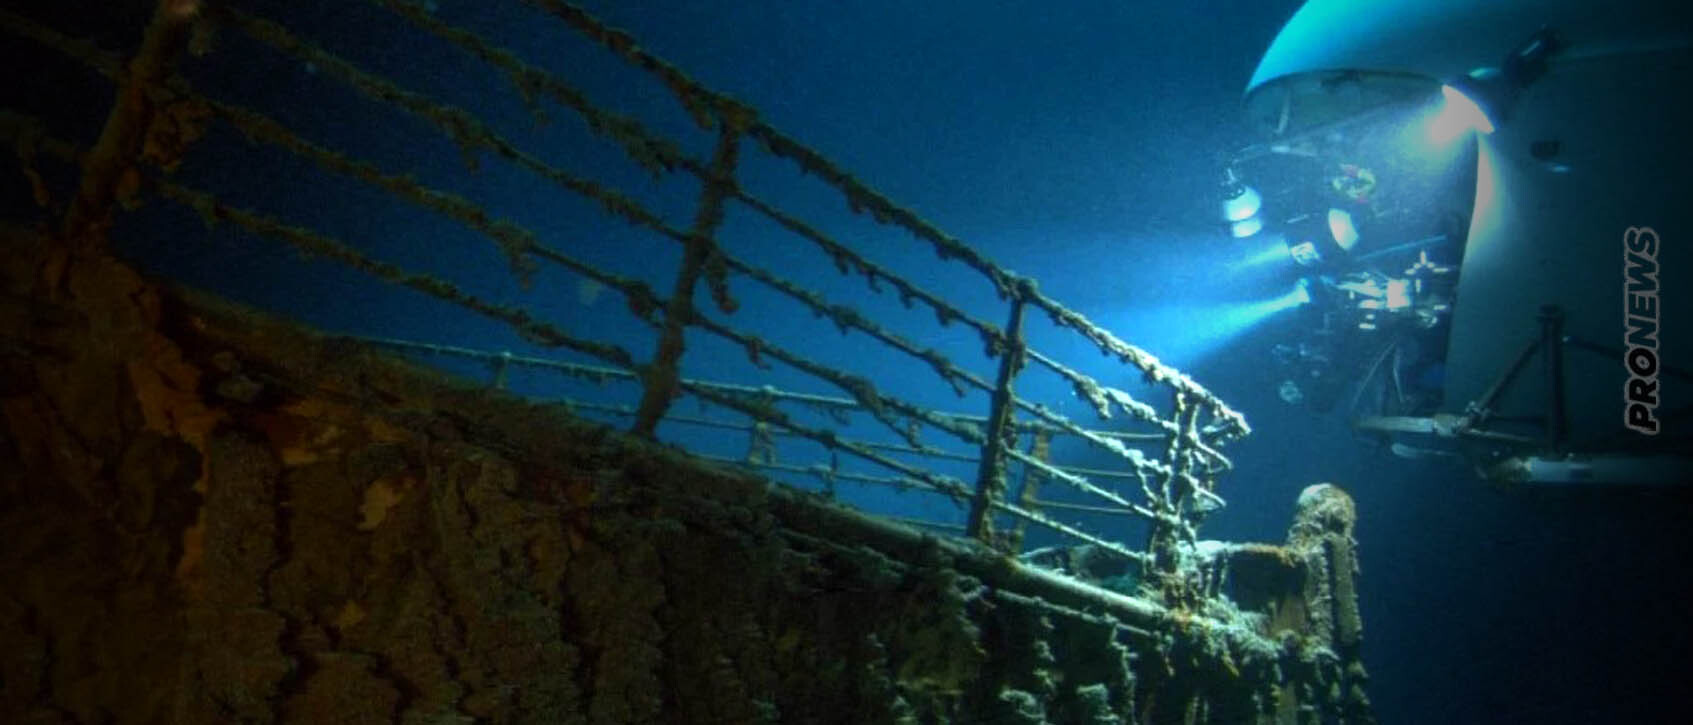 Θρίλερ στο βυθό της θάλασσας: Αγνοείται υποβρύχιο που μετέφερε τουρίστες στο ναυάγιο του Τιτανικού – Χάθηκαν 5 άτομα!